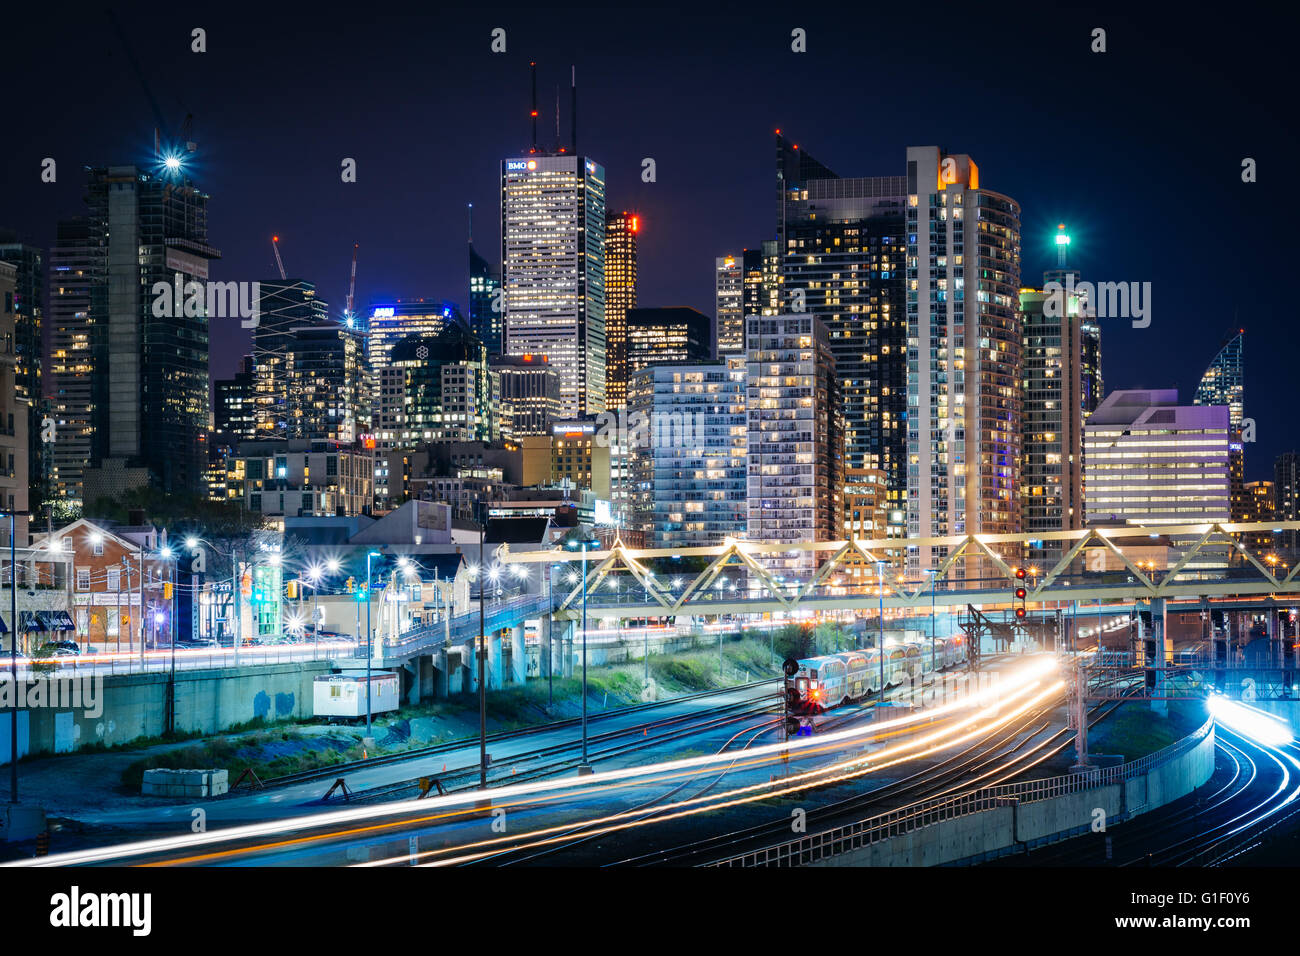 Vue sur les voies ferrées et les bâtiments modernes dans le centre-ville la nuit, de la Bathurst Street Bridge, à Toronto (Ontario). Banque D'Images